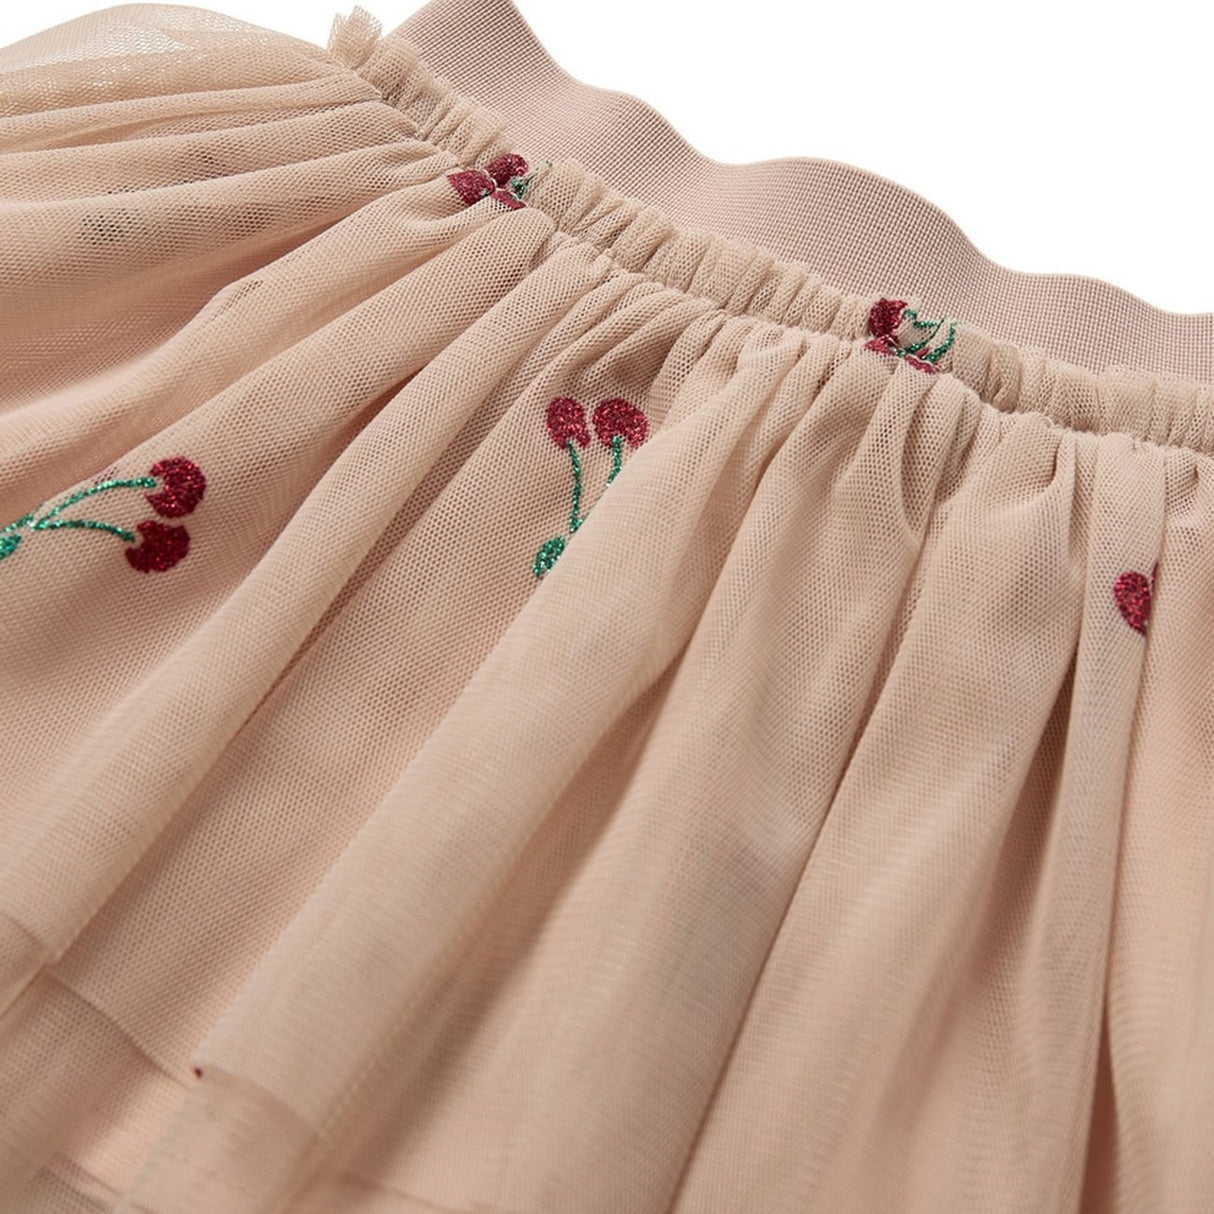 Sofie Schnoor Light Rose Skirt 5